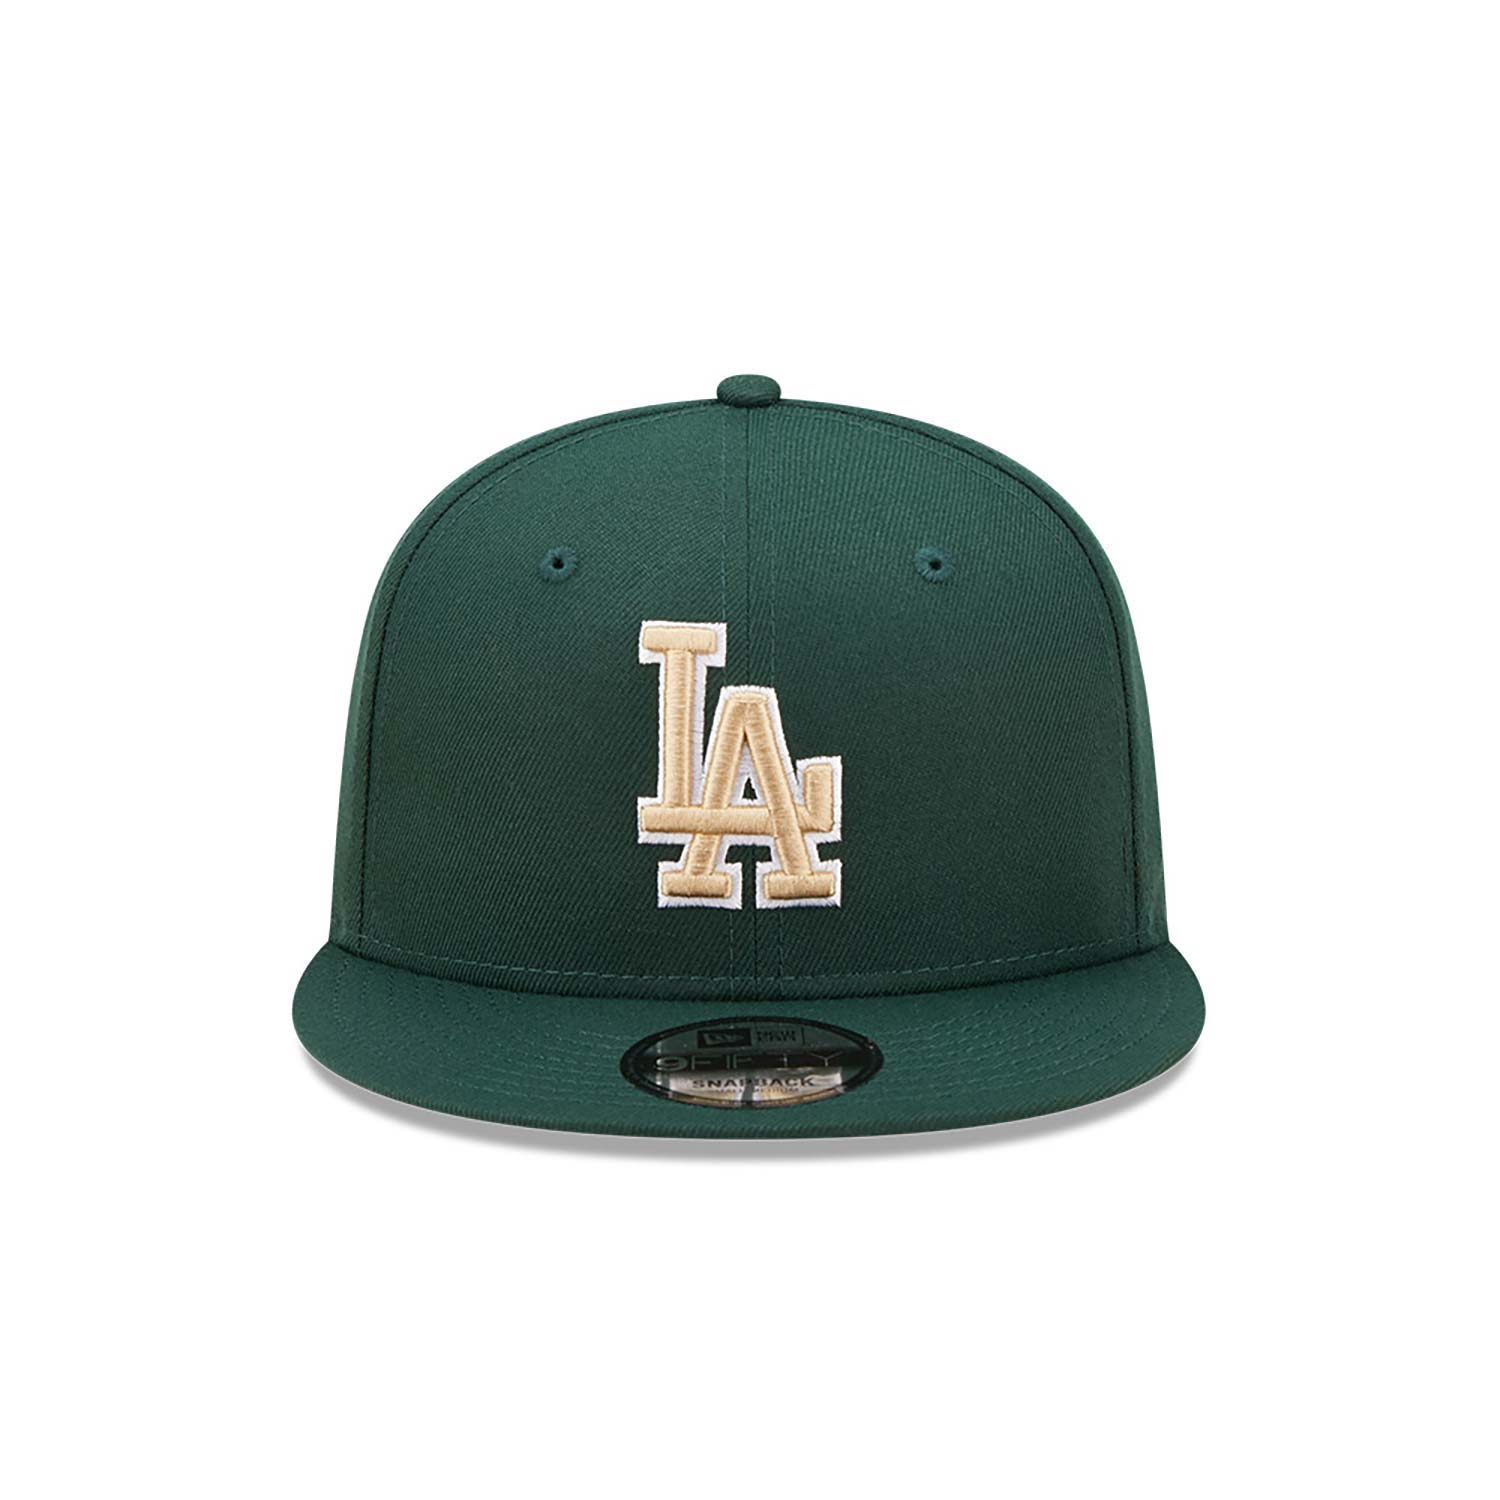 LA Dodgers Repreve Dark Green 9FIFTY Snapback Cap